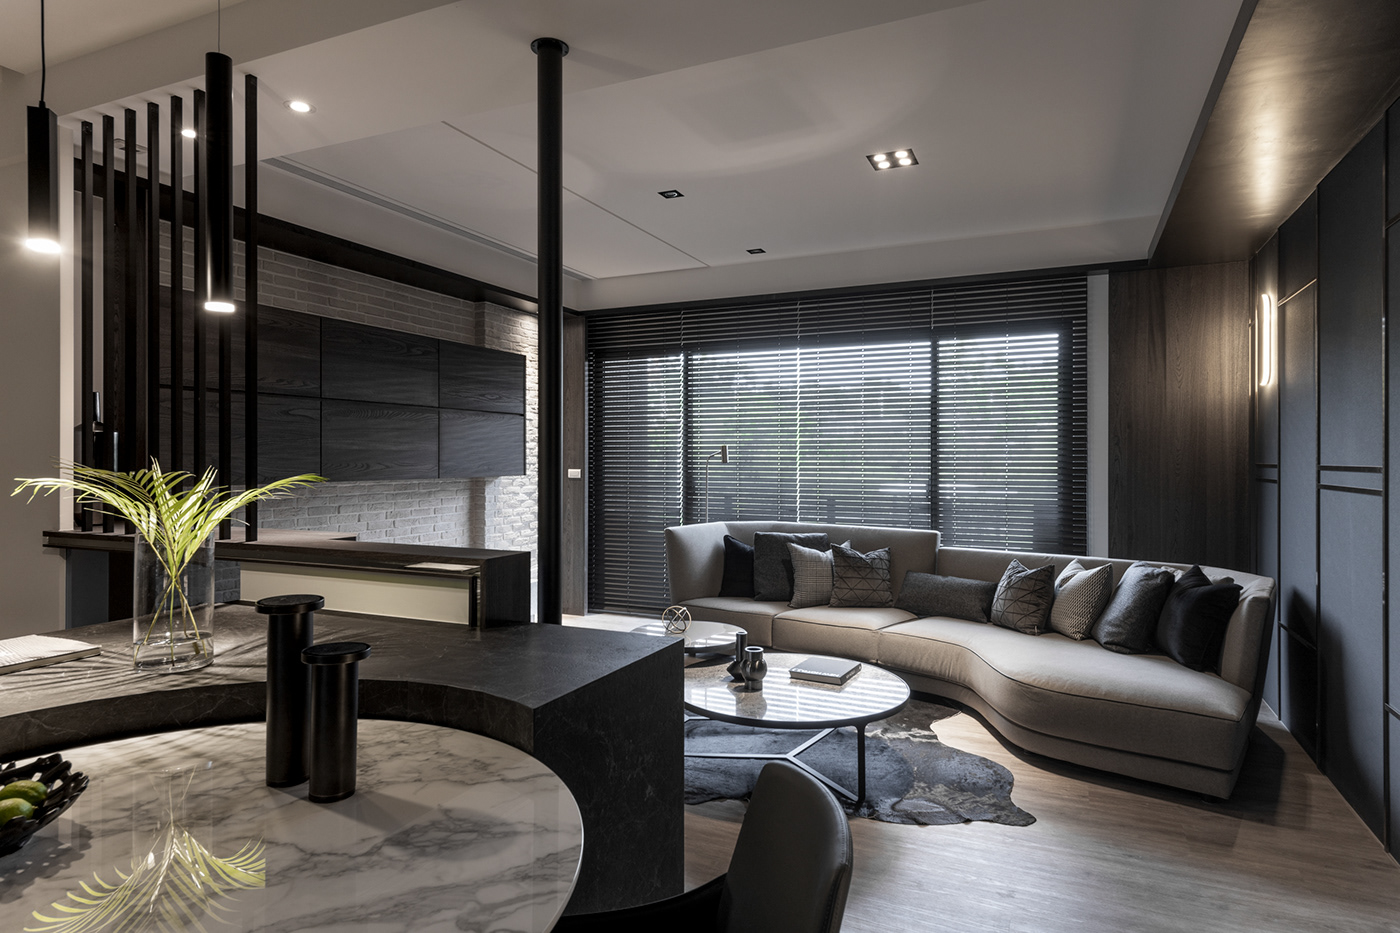 室內設計 居家設計 新竹室內設計 現代風 現代風設計 竹北室內設計 Hsinchudesign TaiwanDesign Housesolver